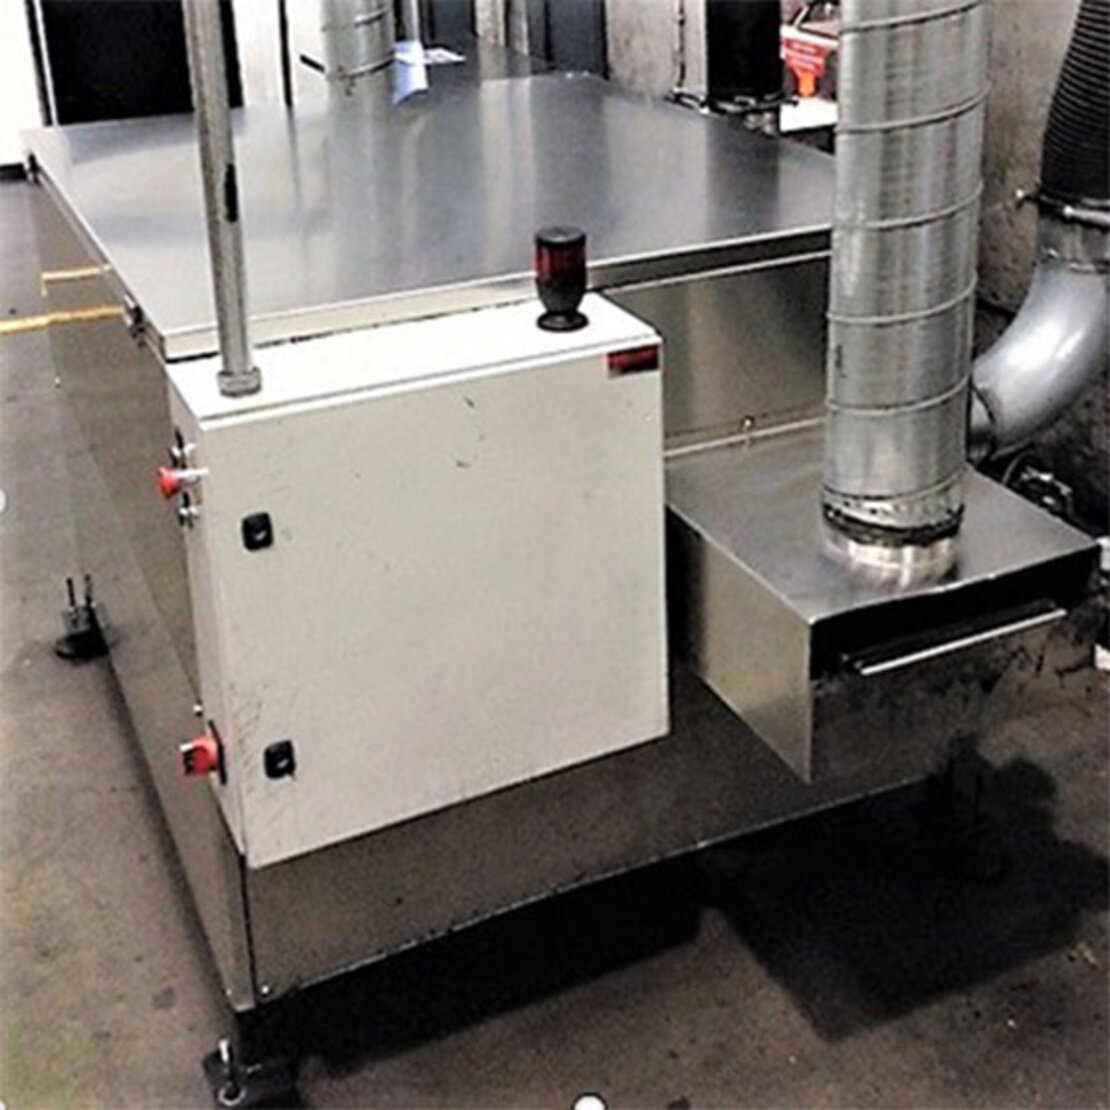  TurboClean 300M máquina automática de limpieza para rodillos magnéticos